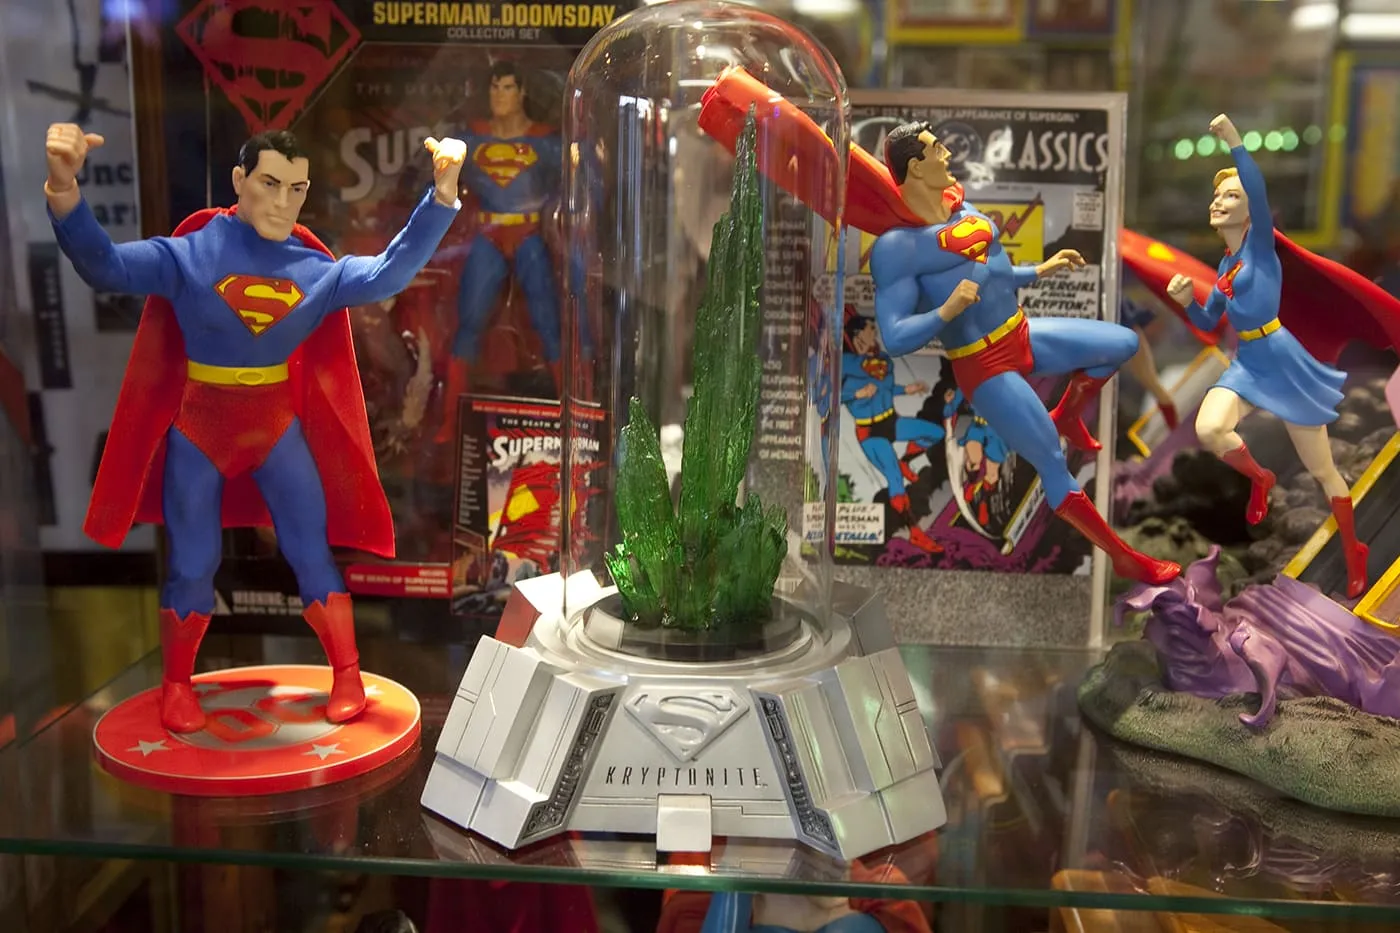 Kryptonite. SuperTAM on 66 - Superman Memorabilia & Ice Cream in Carterville, Missouri